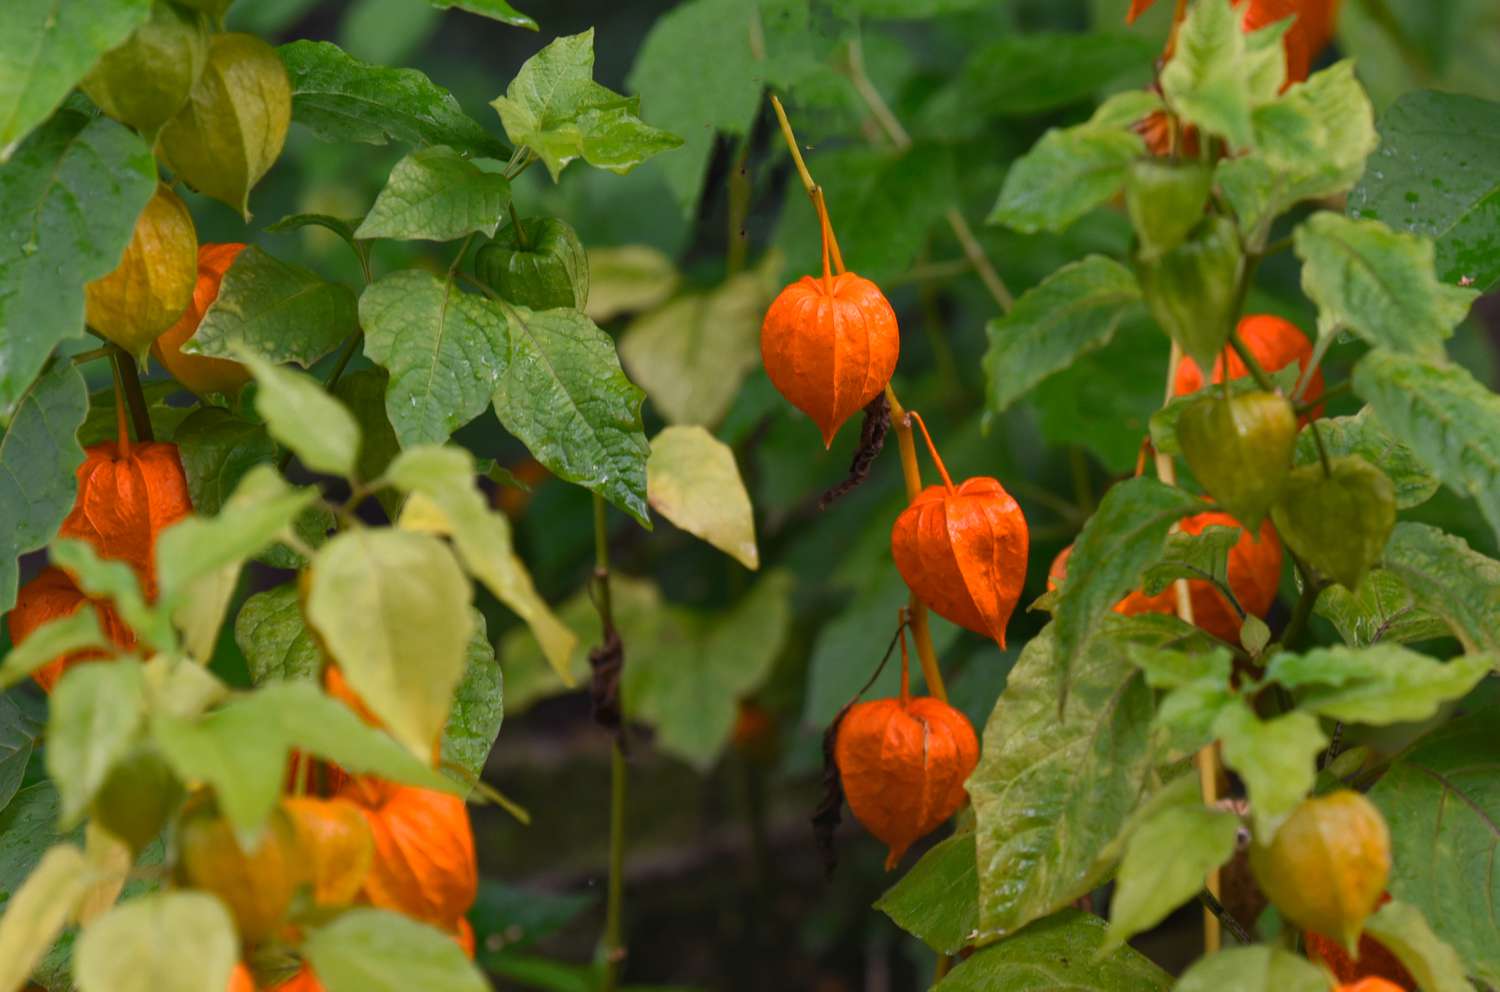 Chinesische Lampionpflanze mit orange-roten, von Blättern umgebenen Samenschoten